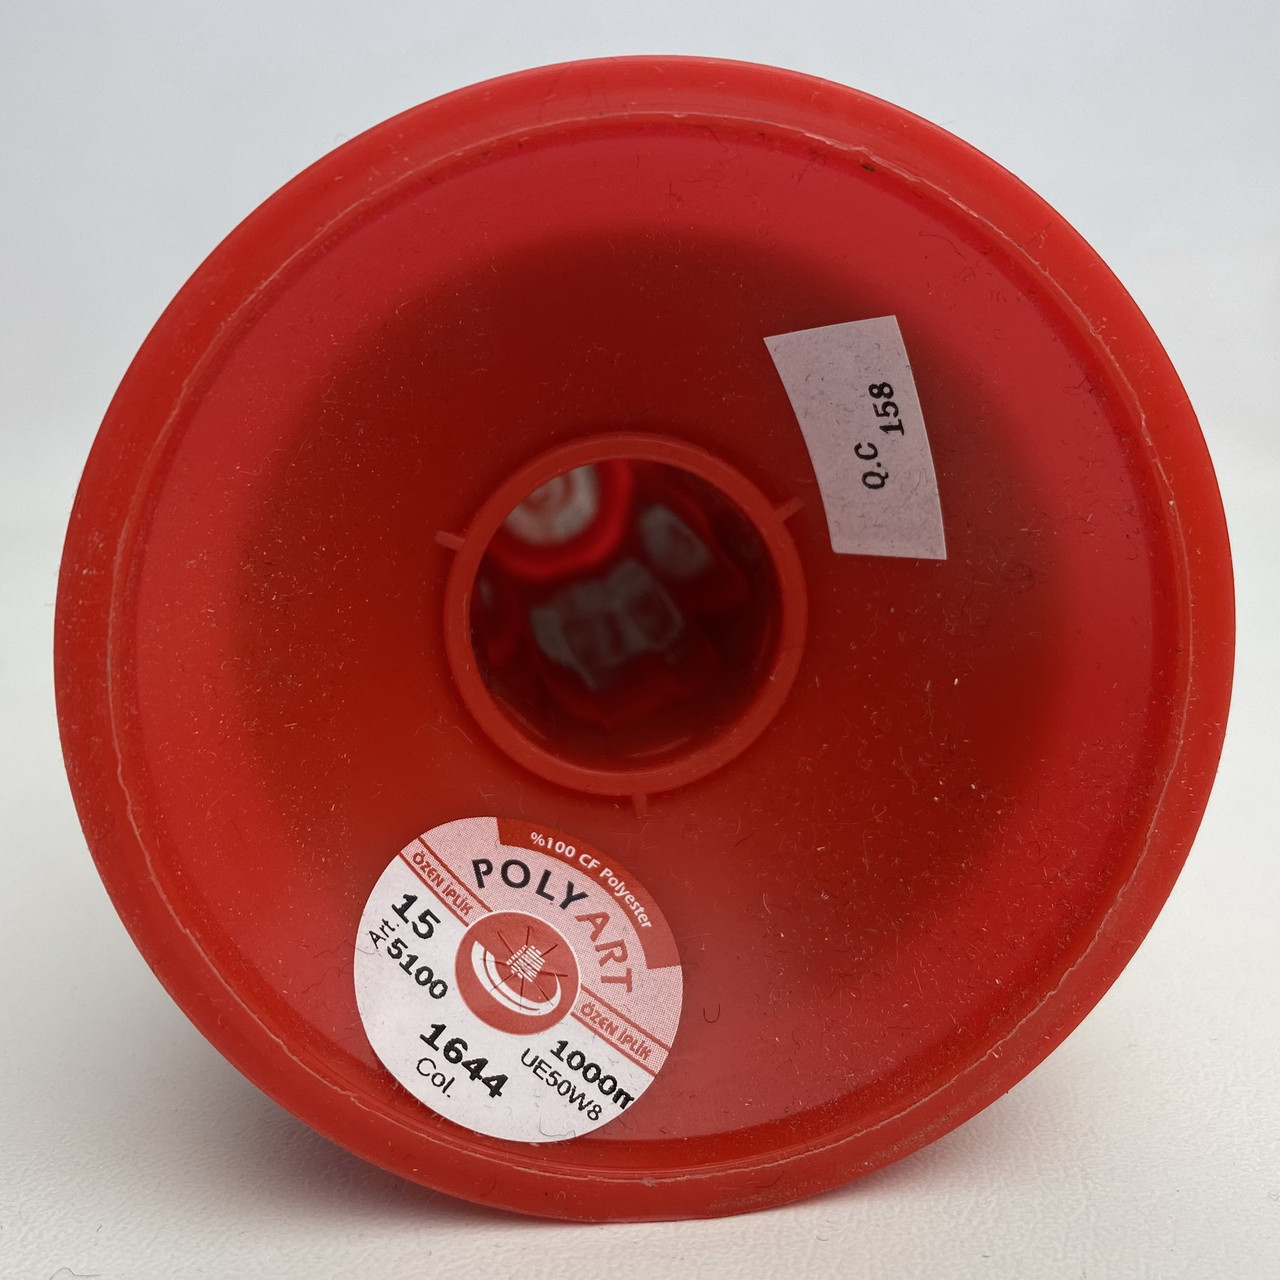 Нить POLYART(ПОЛИАРТ) N15 цвет 1644 красный, для пошив чехлов на автомобильные сидения и руль, 1000м детальная фотка